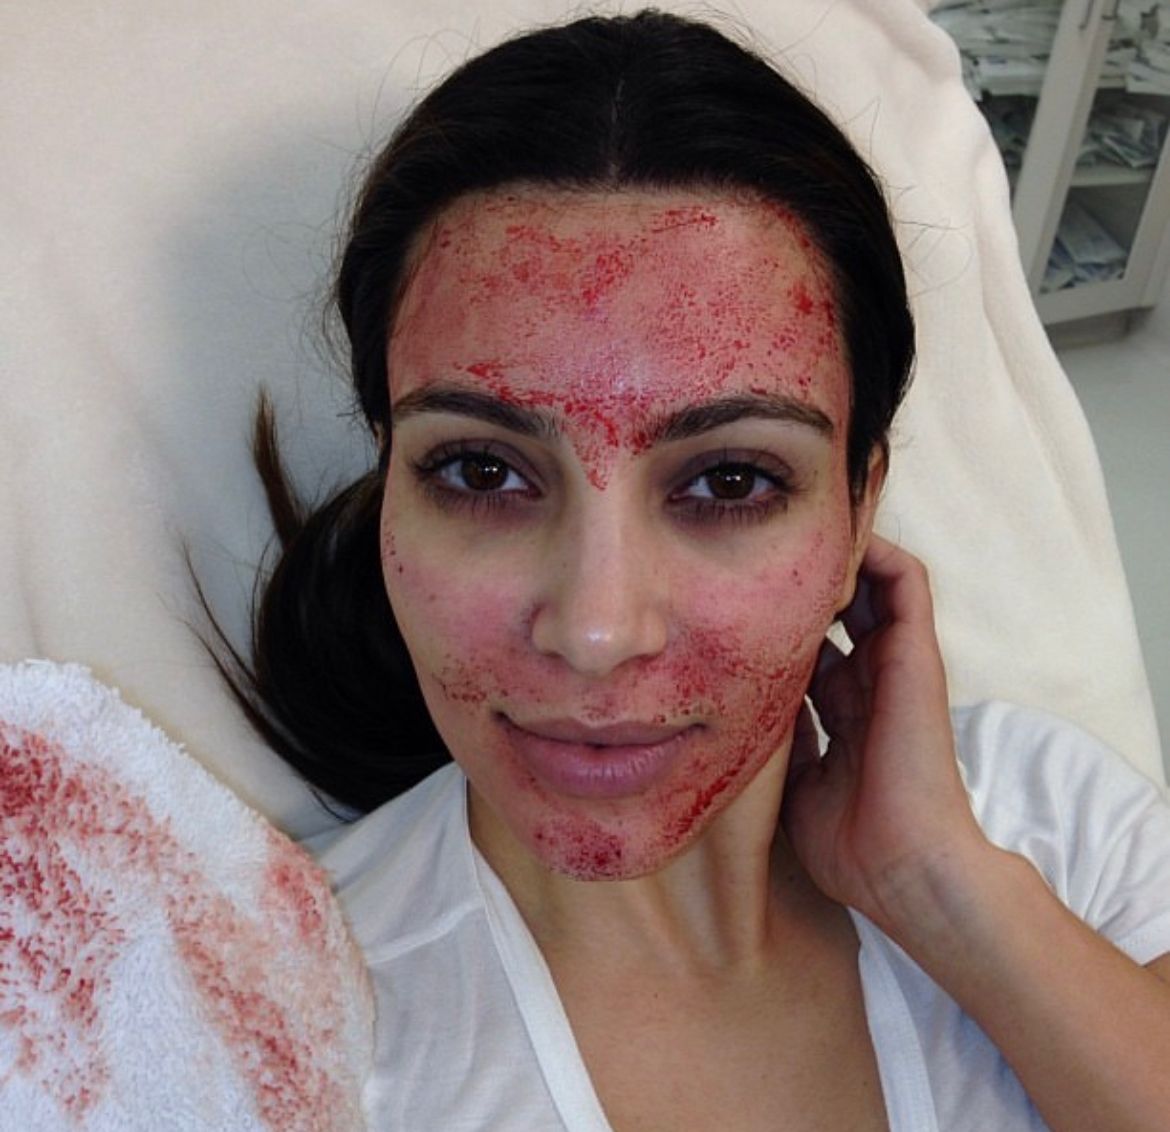 La famosa publicó el tratamiento en sus redes sociales 
(Foto: Instagram/@kimkardashian)